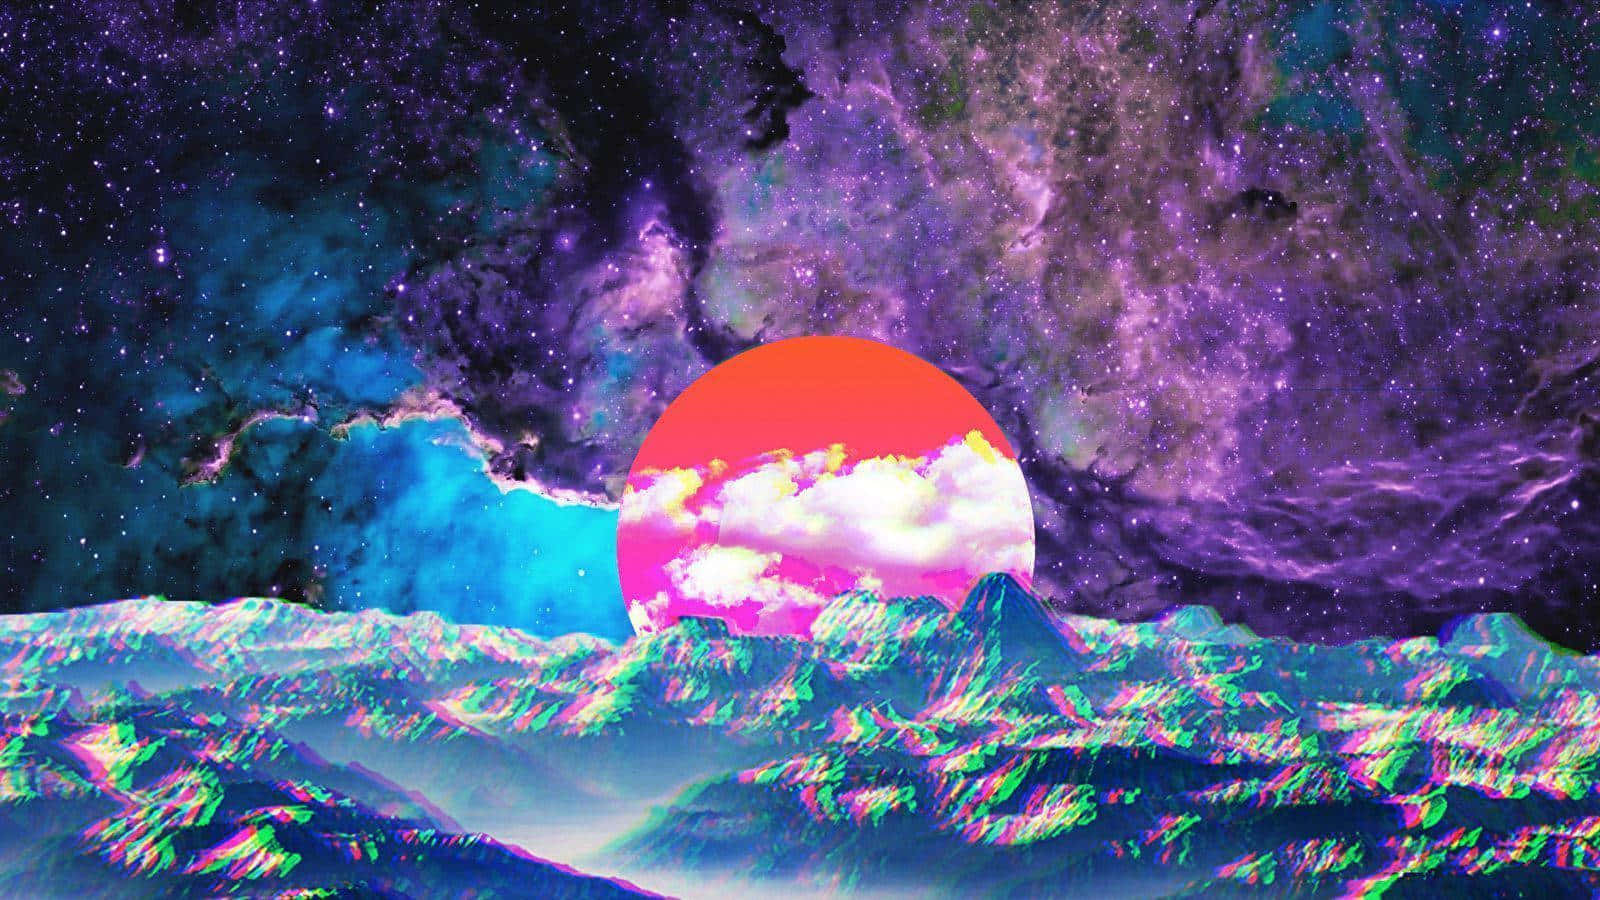 Unaimagen Pixelada Y Colorida De Un Sol En El Espacio Fondo de pantalla